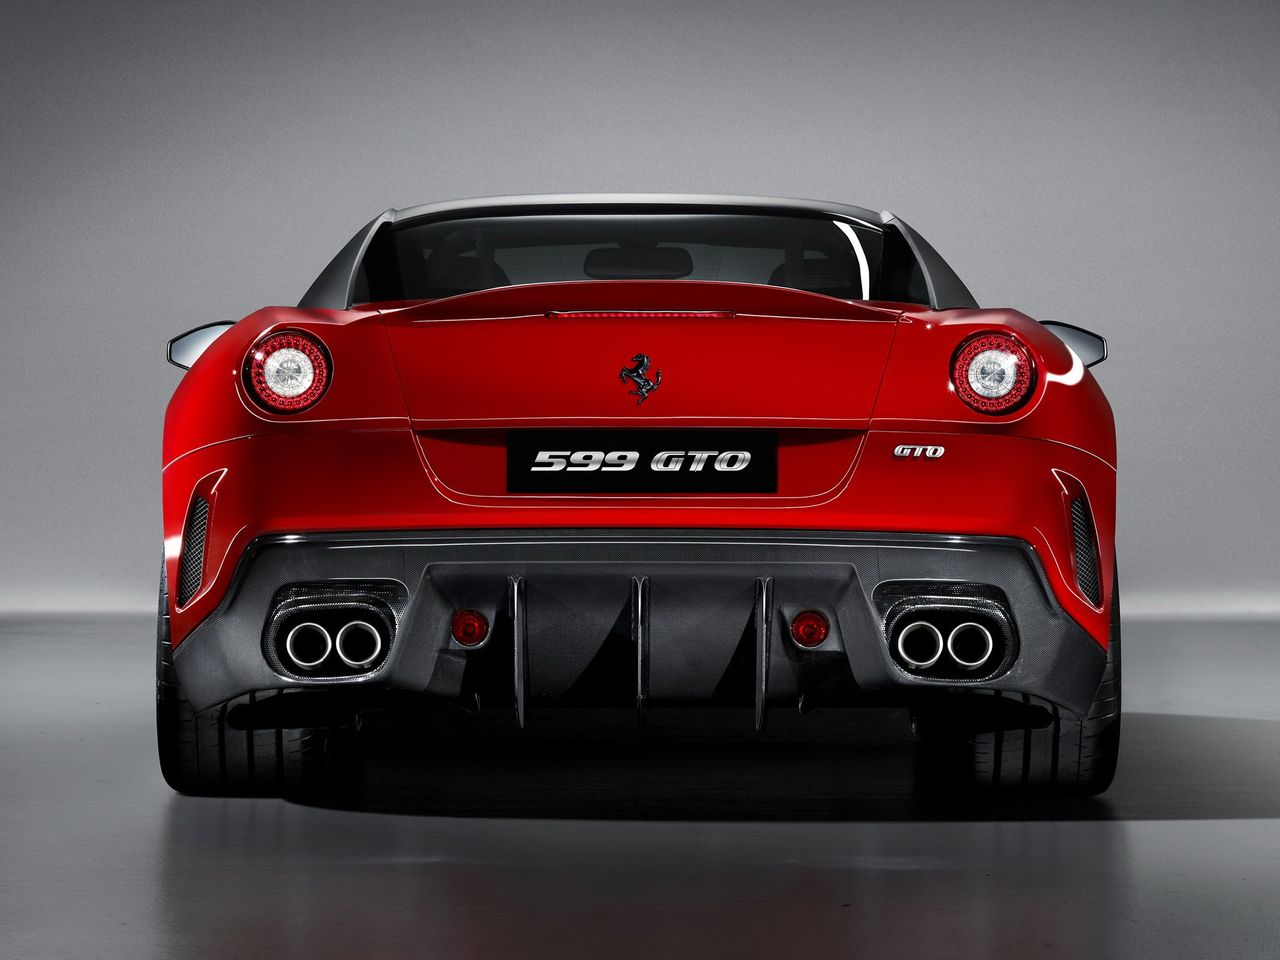 Pod maską 599 GTO pracuje potężne V12 o pojemności 6 l (5999 cm sześciennych - stąd nazwa). Jednostka rozwija 670 KM i 620 Nm.